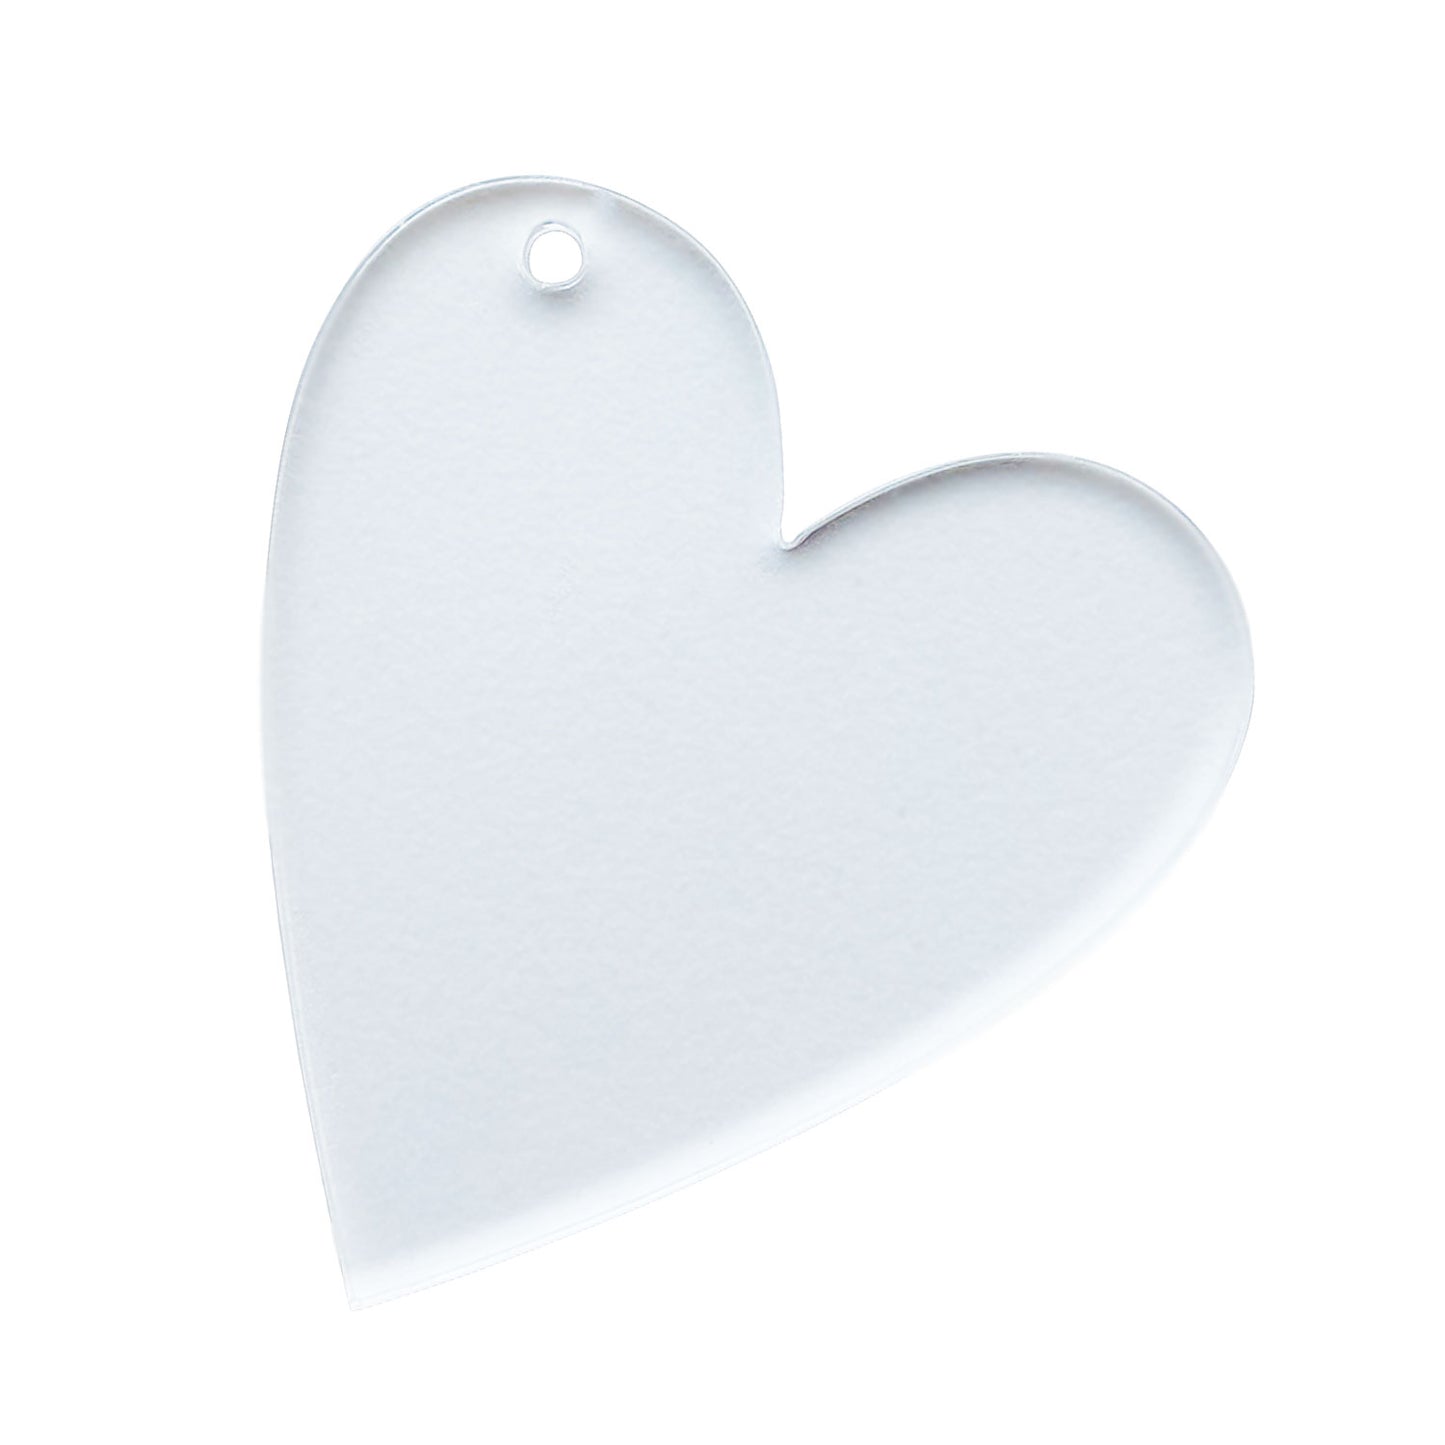 Heart Acrylic Blanks With Discount – Caluya Design